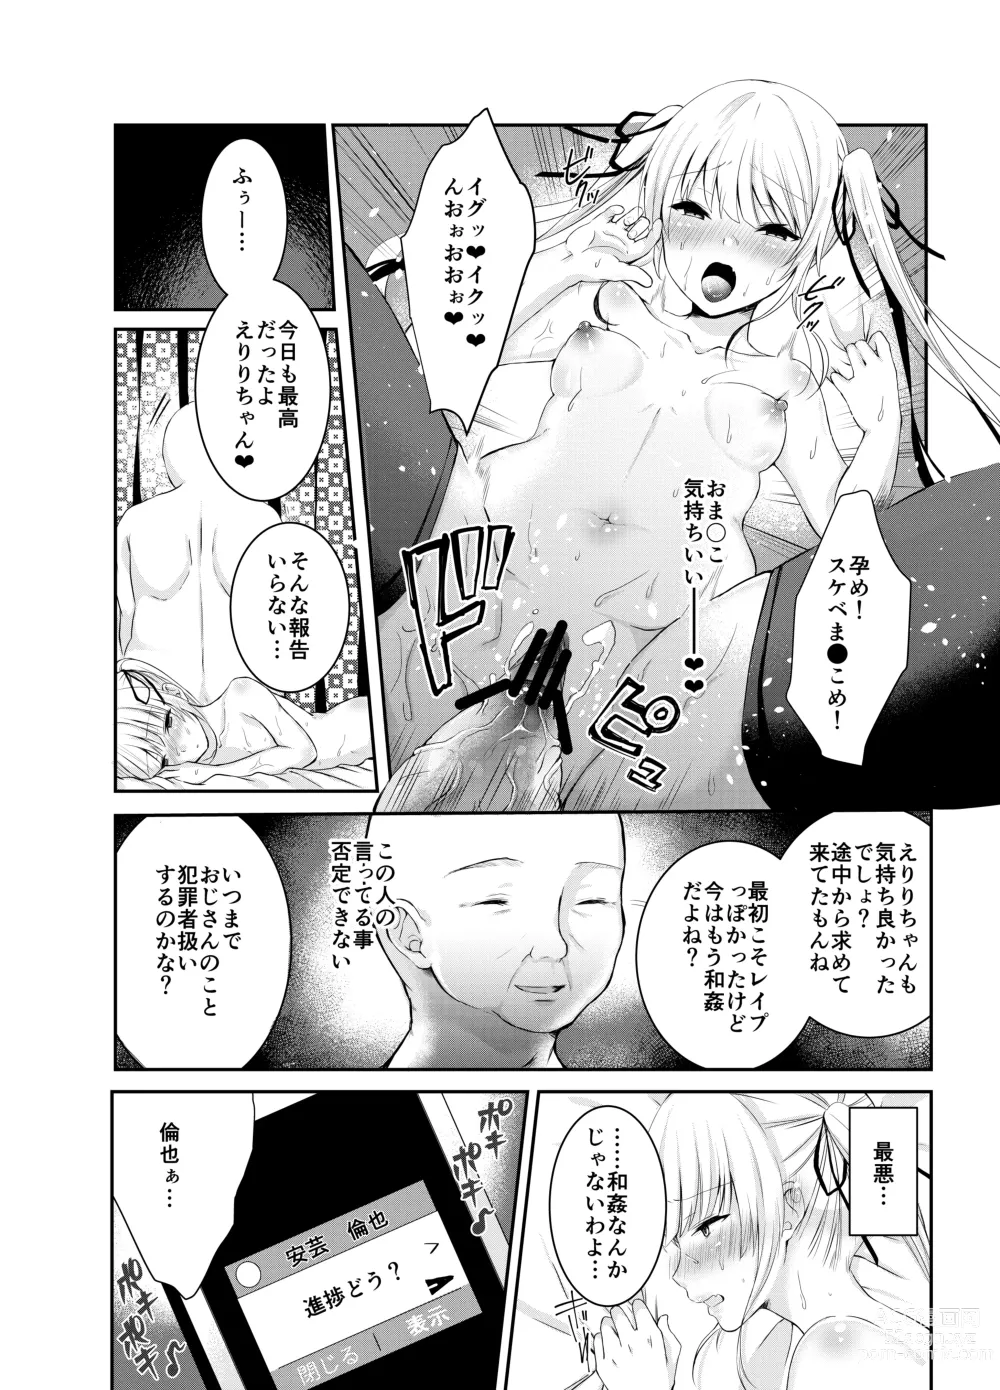 Page 7 of doujinshi Saeman 3